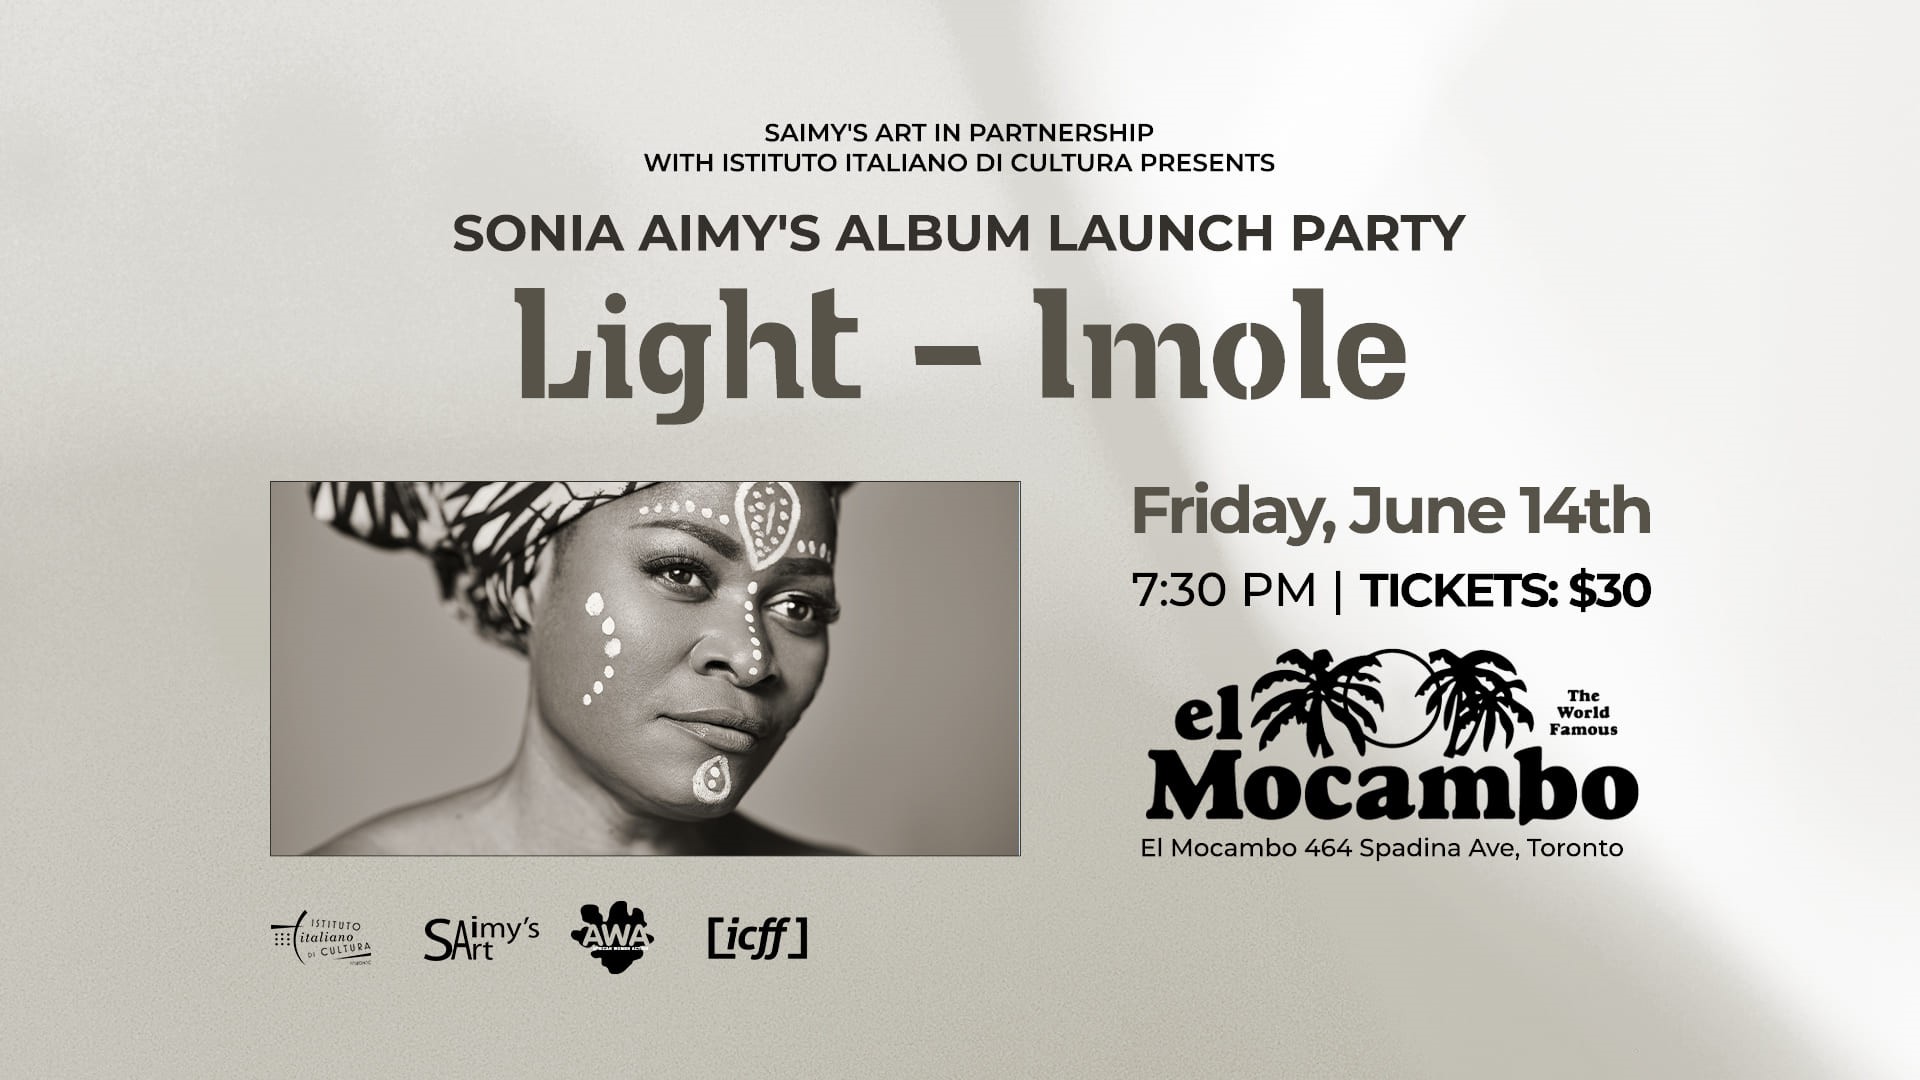 Sonia Aimee, cantautrice nigeriana di origini italiane e ora nata a Toronto, pubblicherà il nuovo album Light-Imole il 14 giugno all'El Mogambo di Toronto.